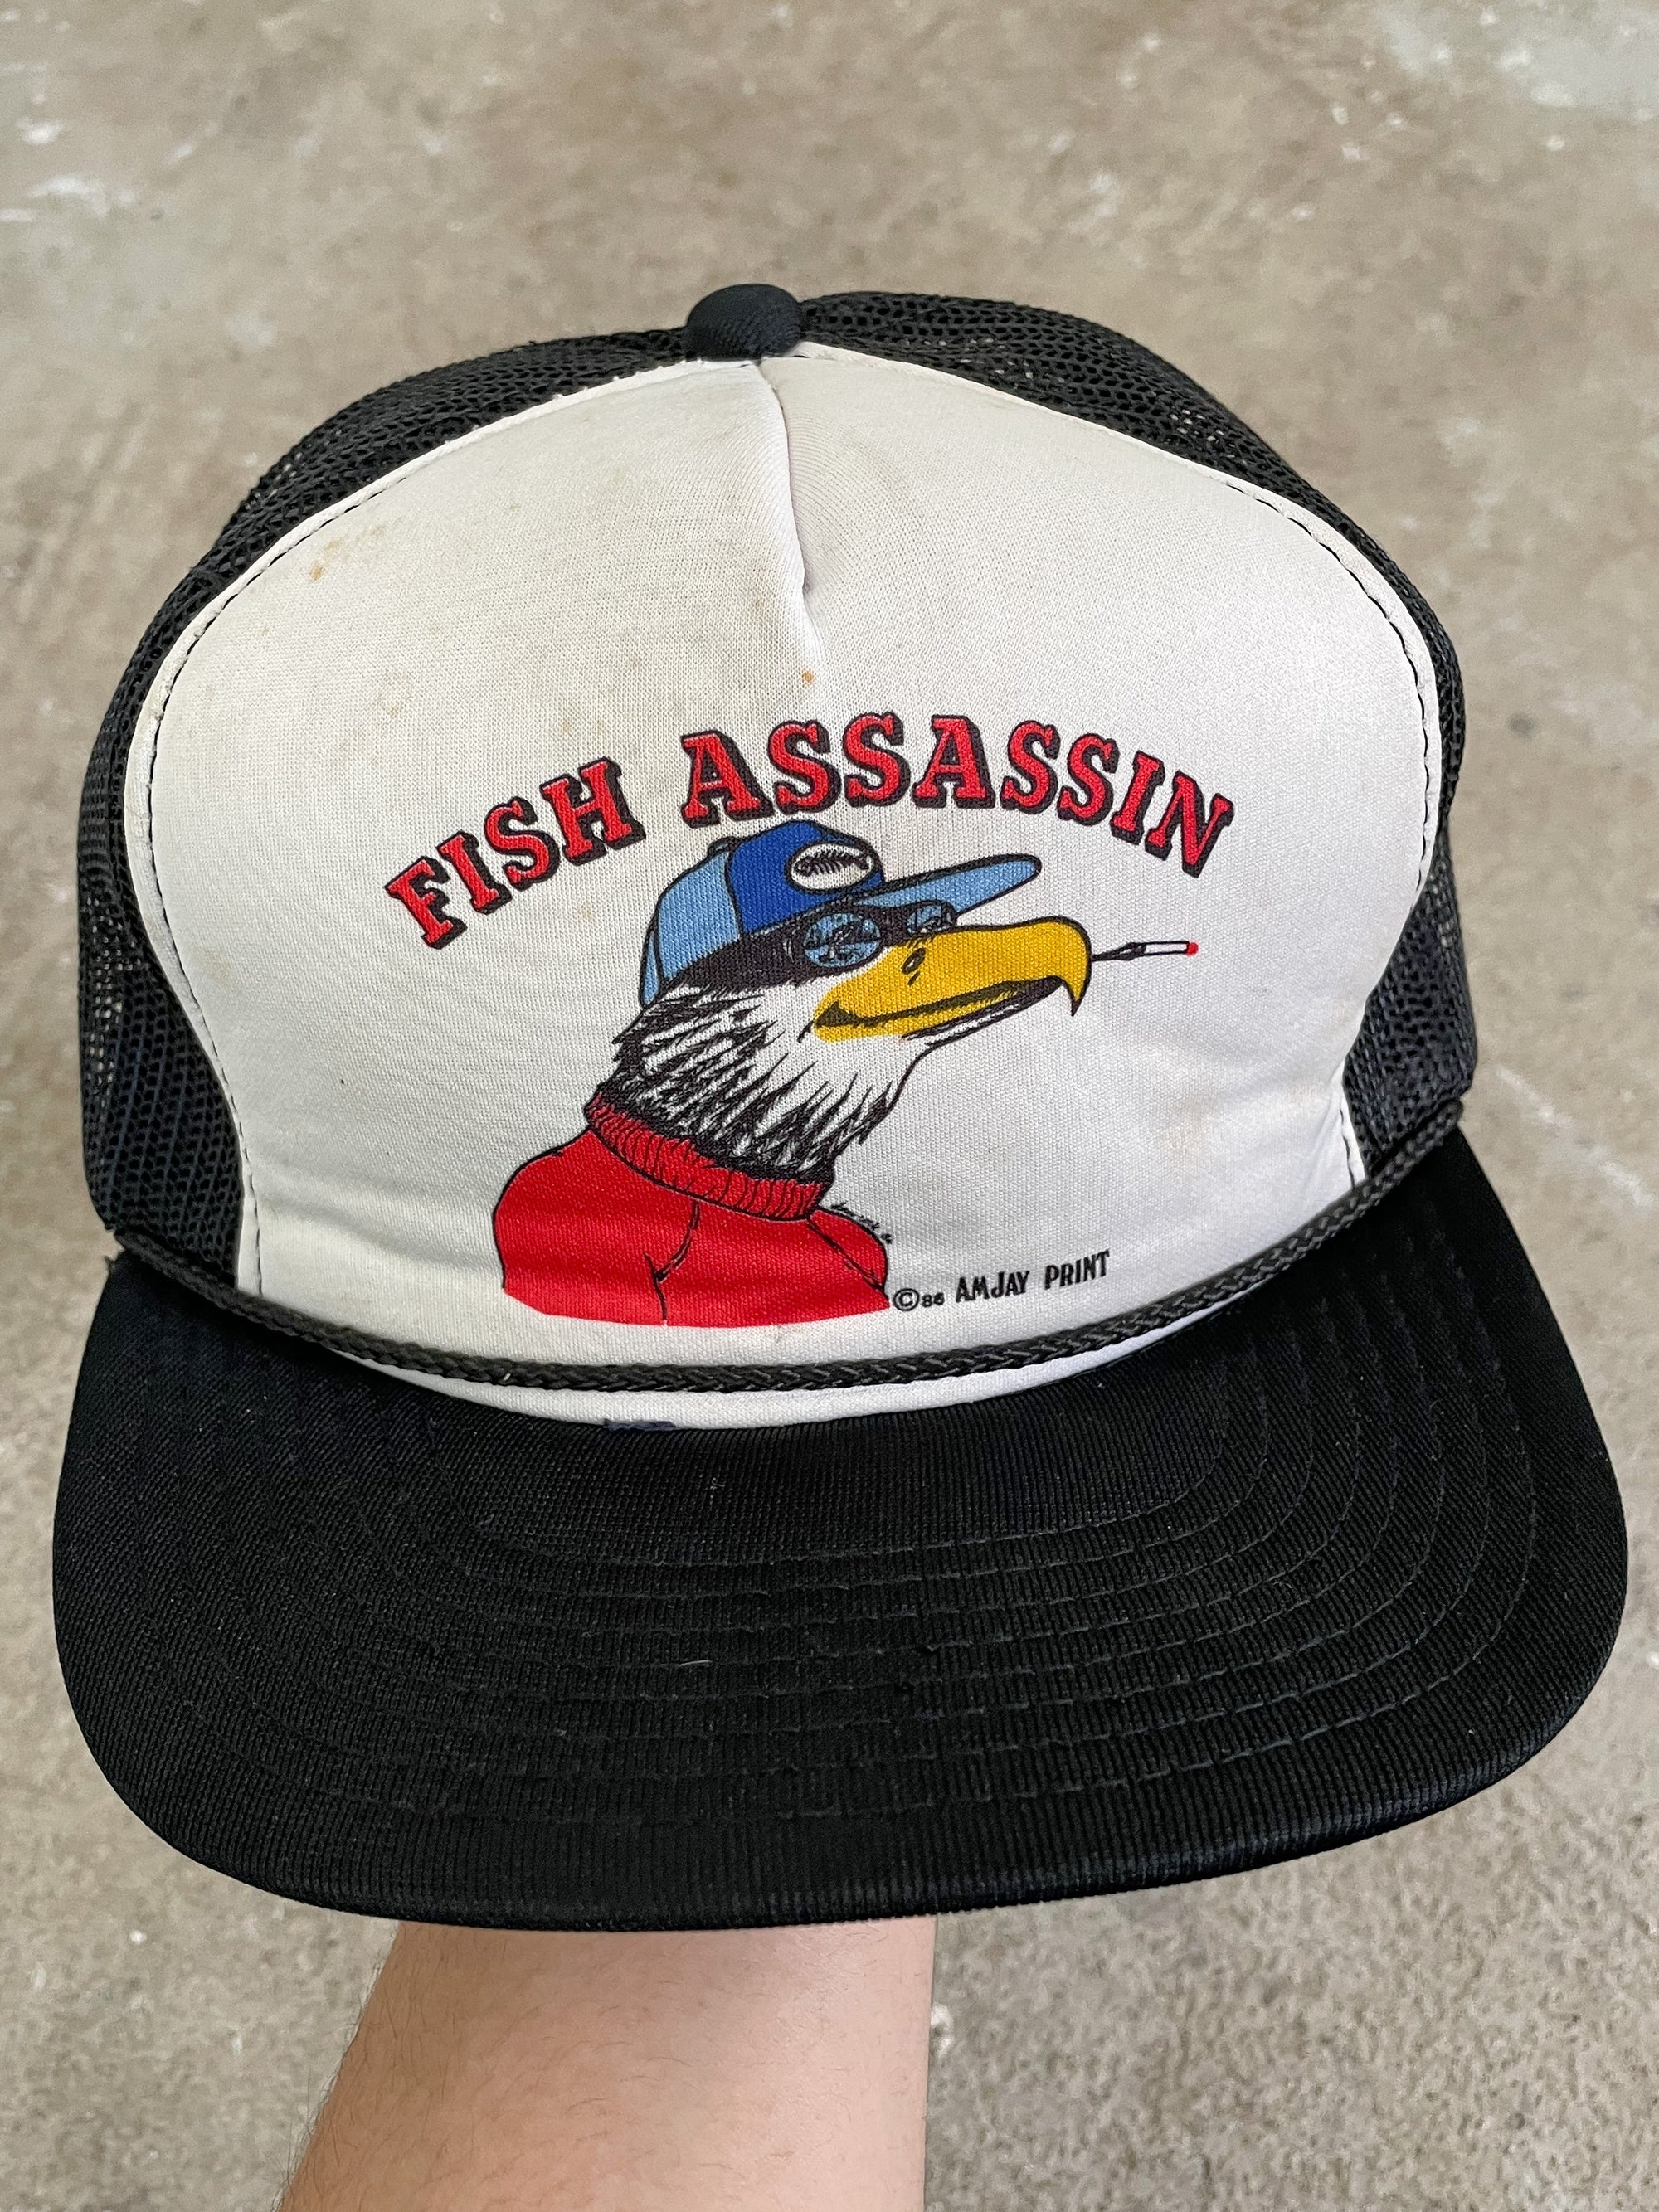 1980s “Fish Assassin” Trucker Hat